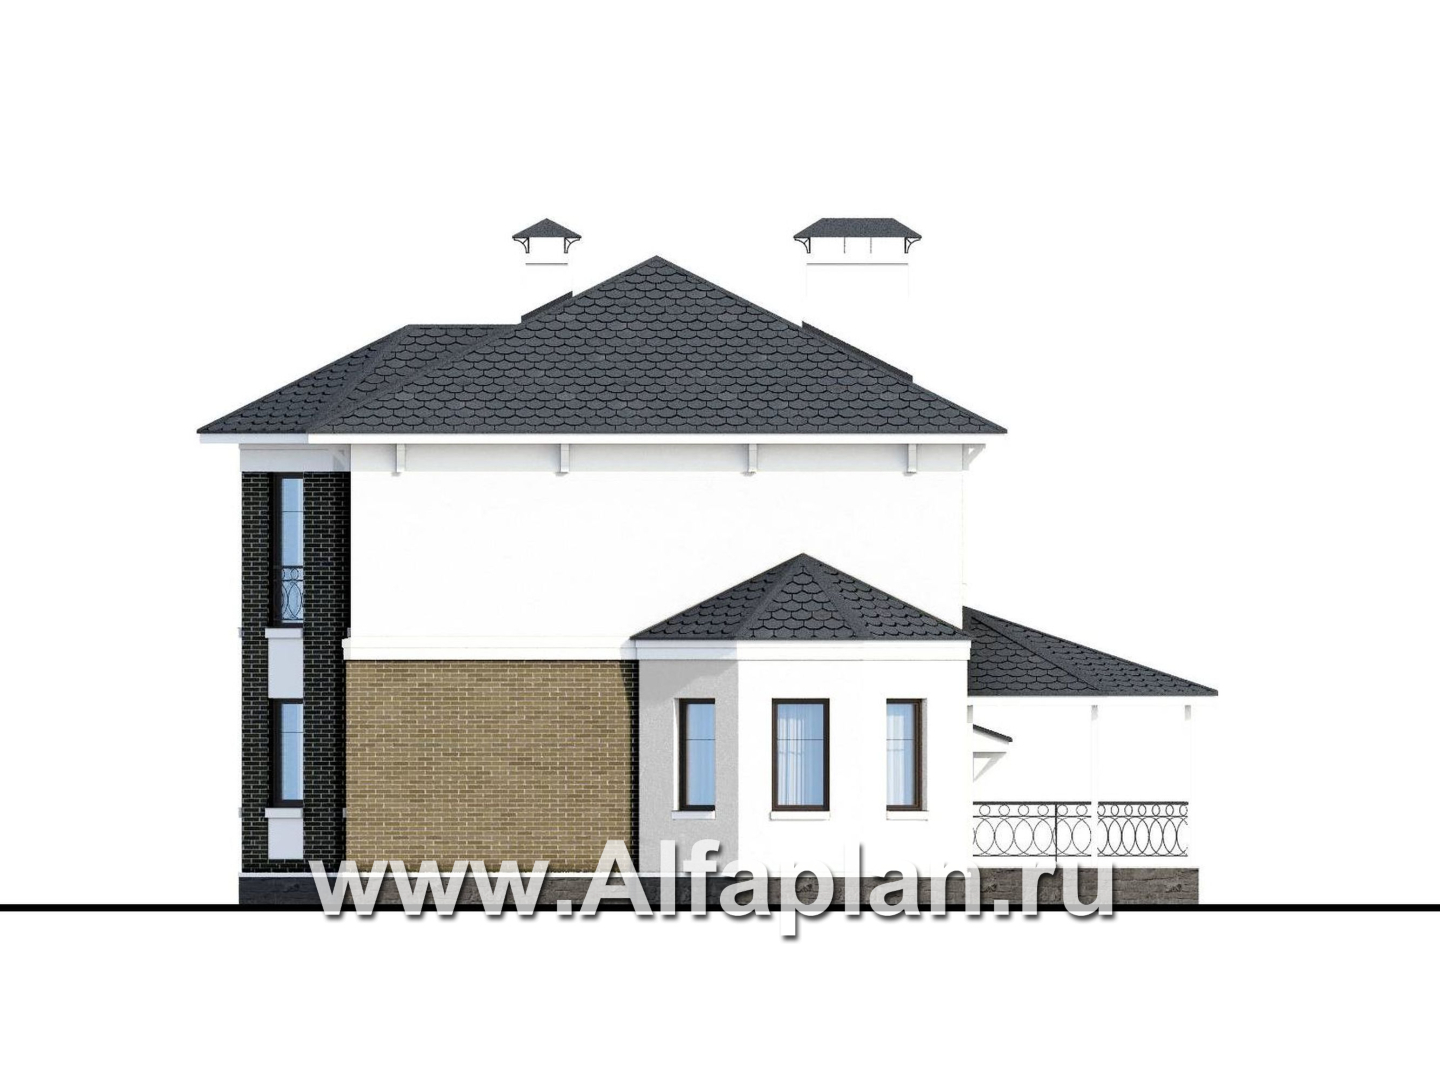 «Классика» - проект двухэтажного дома с эркером, планировка с кабинетом на 1 эт и с террасой, с гаражом на 2 авто - фасад дома